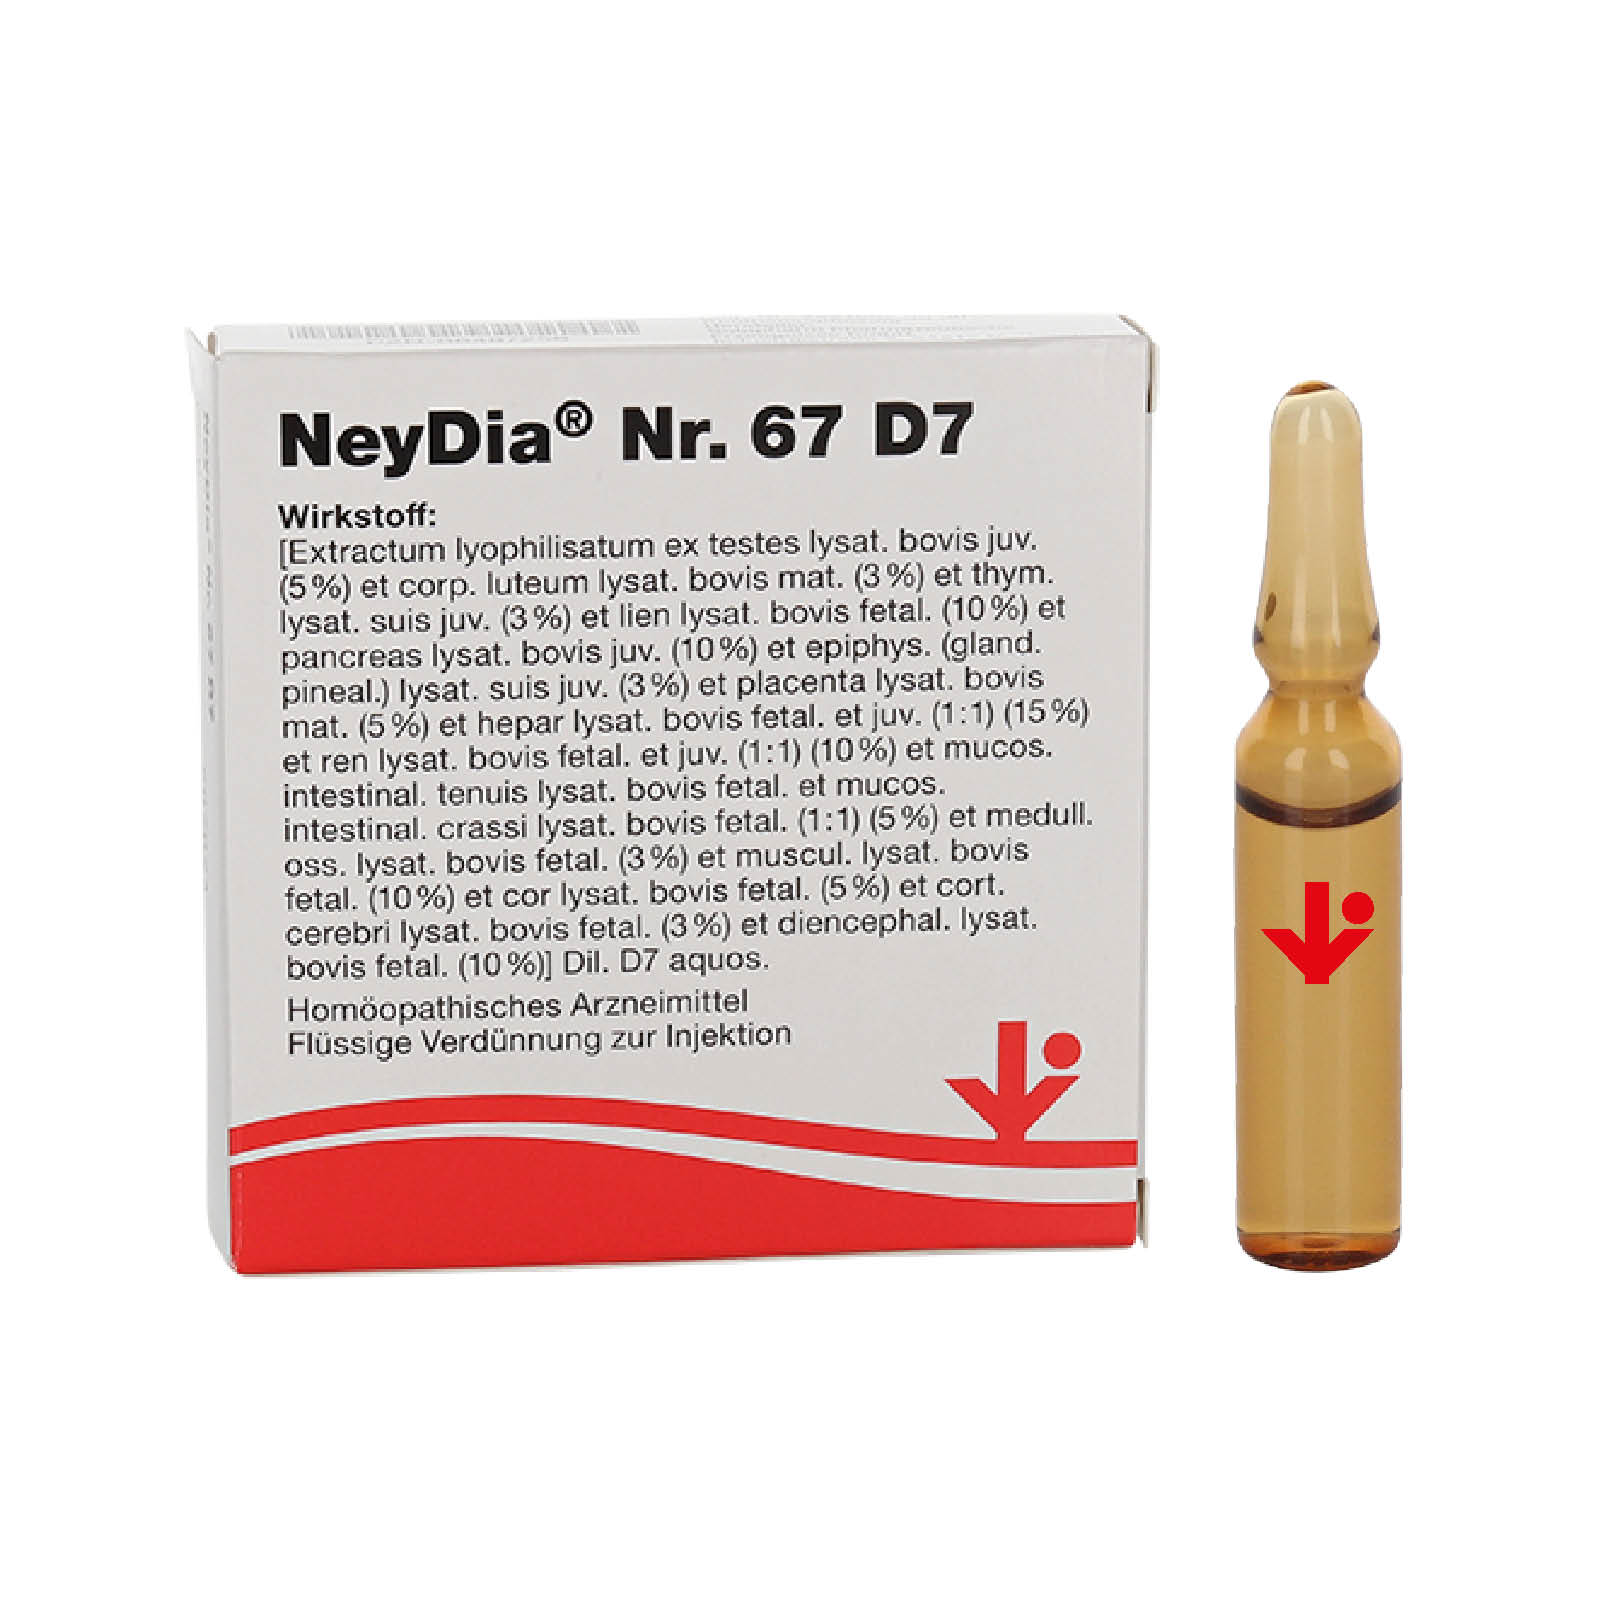 NeyDia Nr. 67 D7 (früher NeyGluc® genannt)